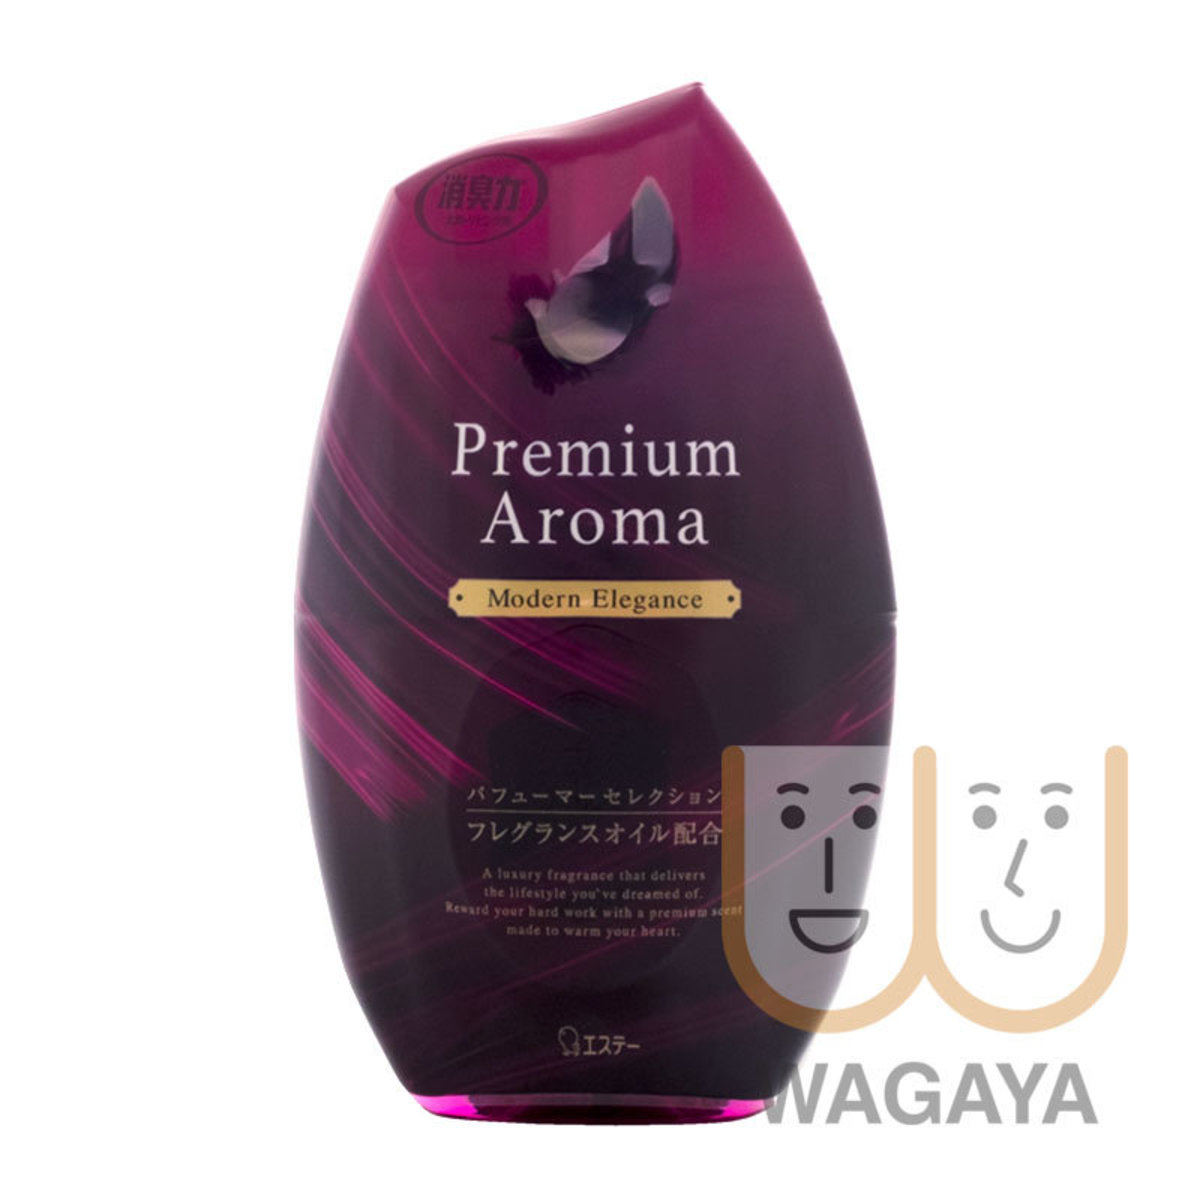 雞仔牌 消臭力premium Aroma 室內除臭劑400ml Modern Elegance 紫紅 平行進口貨品 Hktvmall 香港最大網購平台